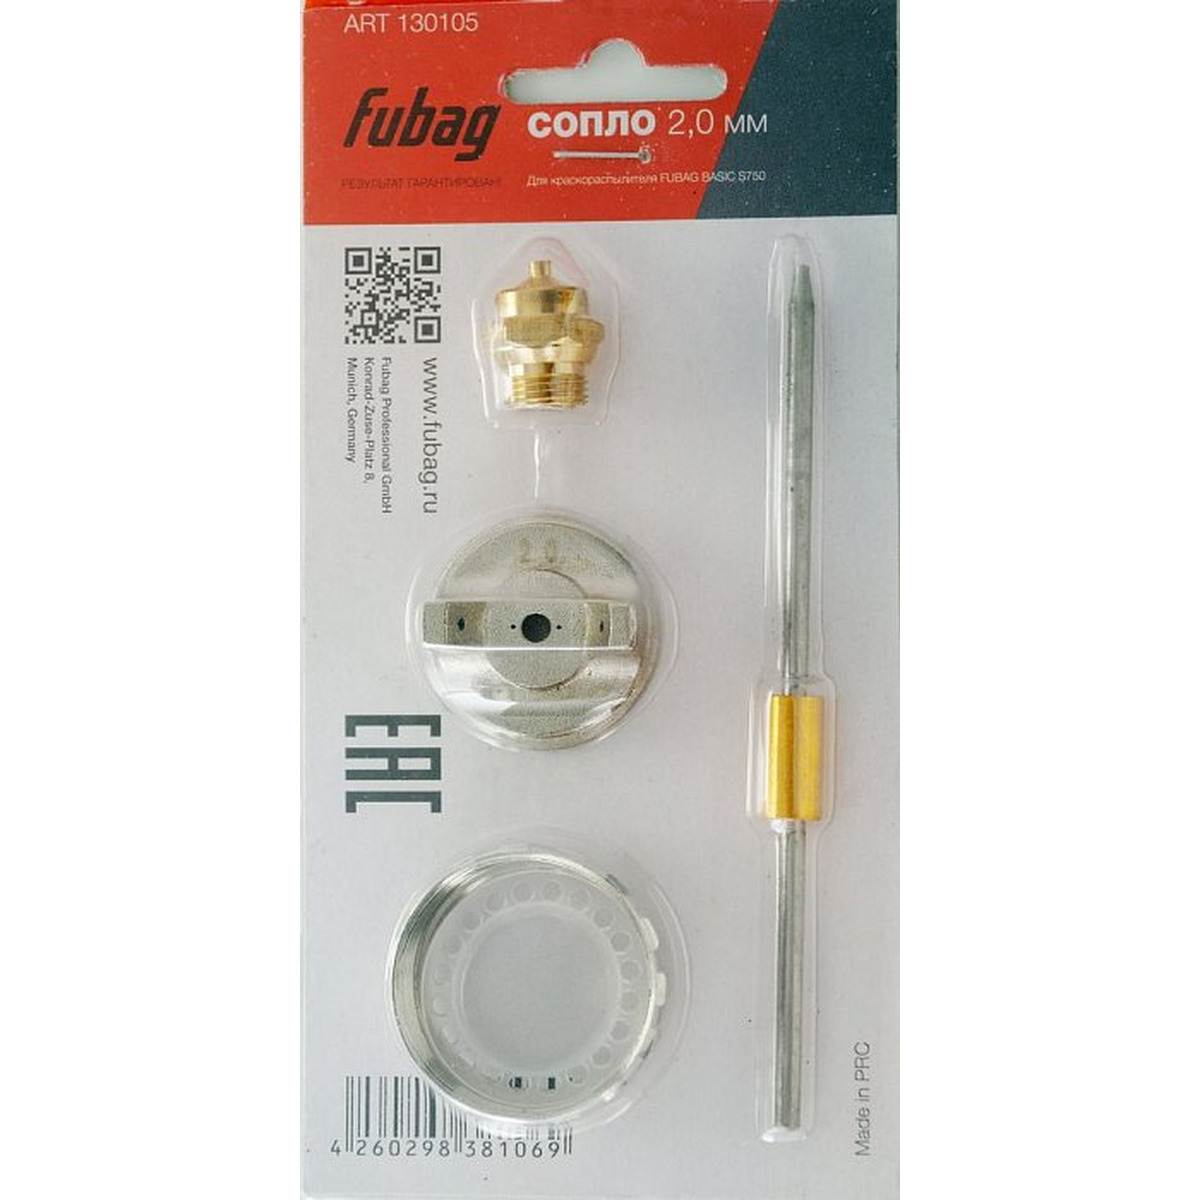 Сопло Fubag для краскораспылителя Basic S750 2.0мм 130105